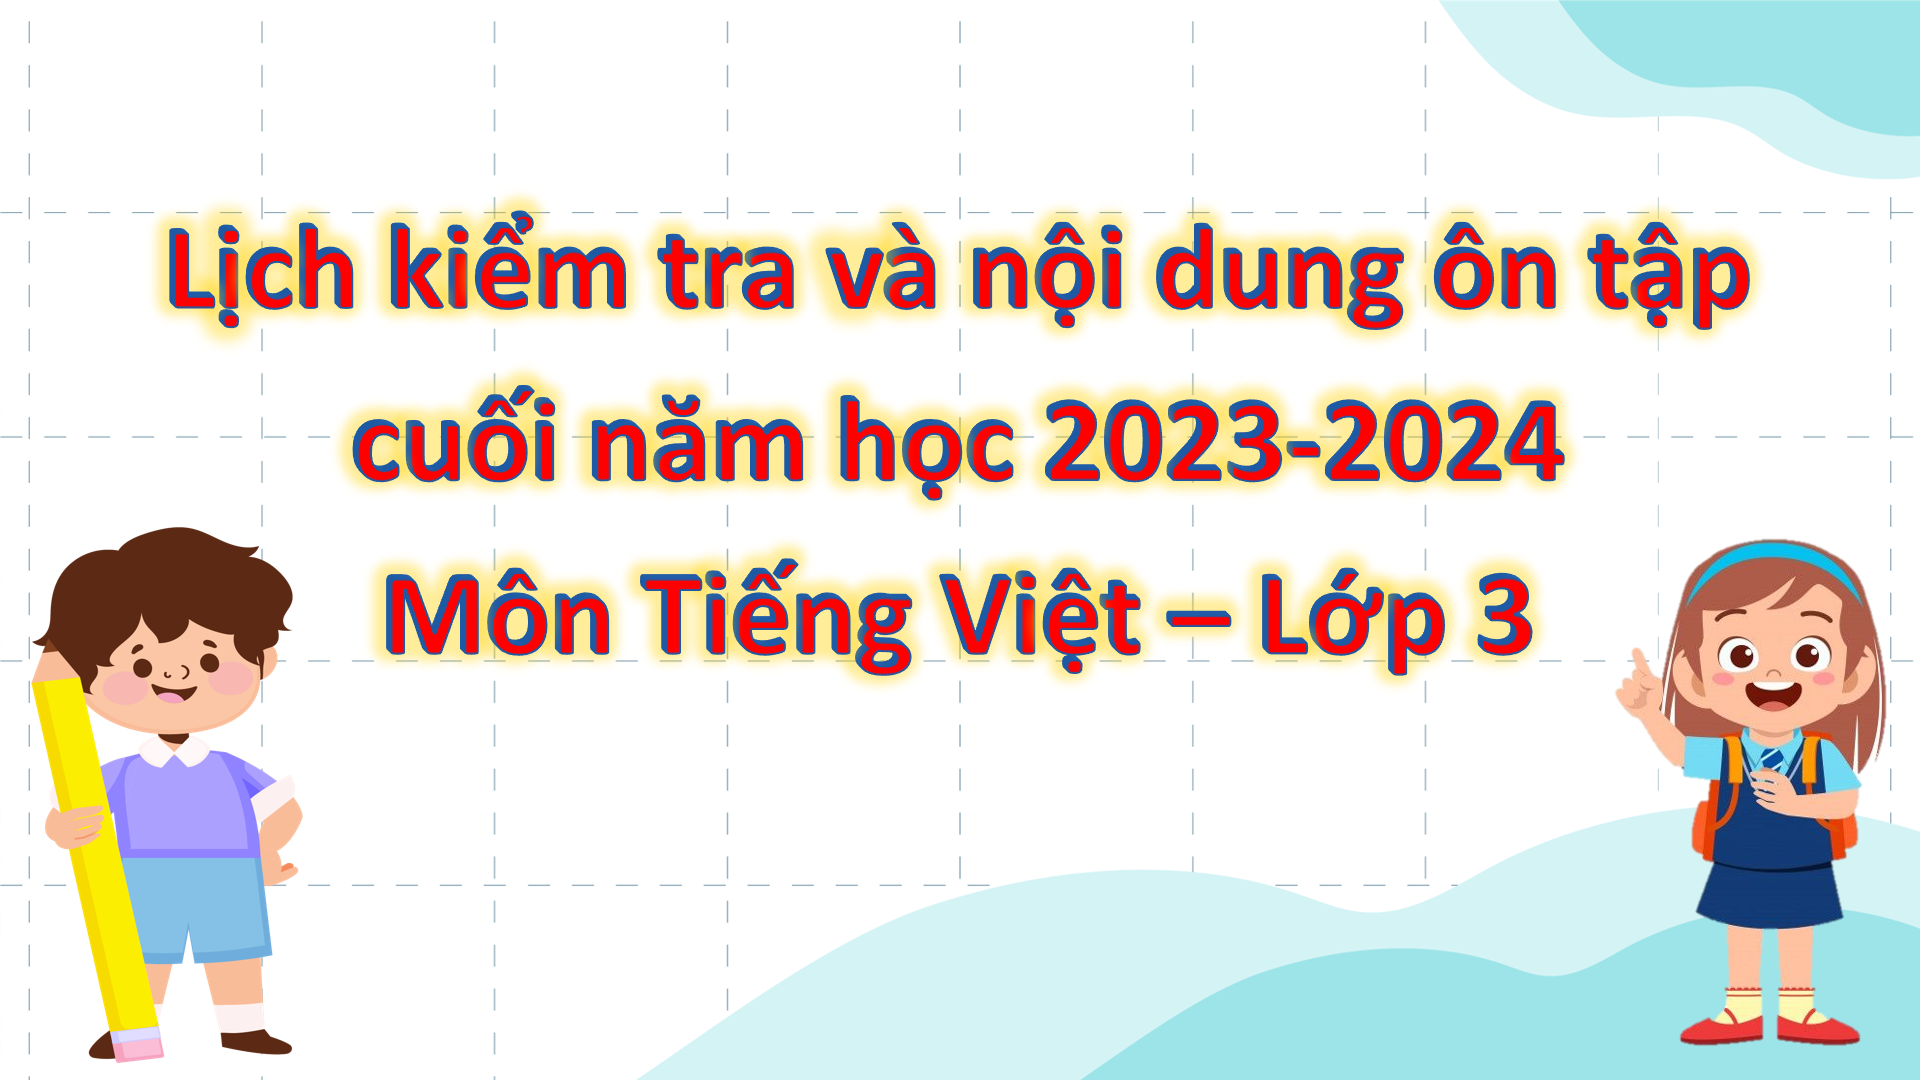 Lịch kiểm tra và nội dung ôn tập cuối năm học 2023-2024 Môn Tiếng Việt - Lớp 3